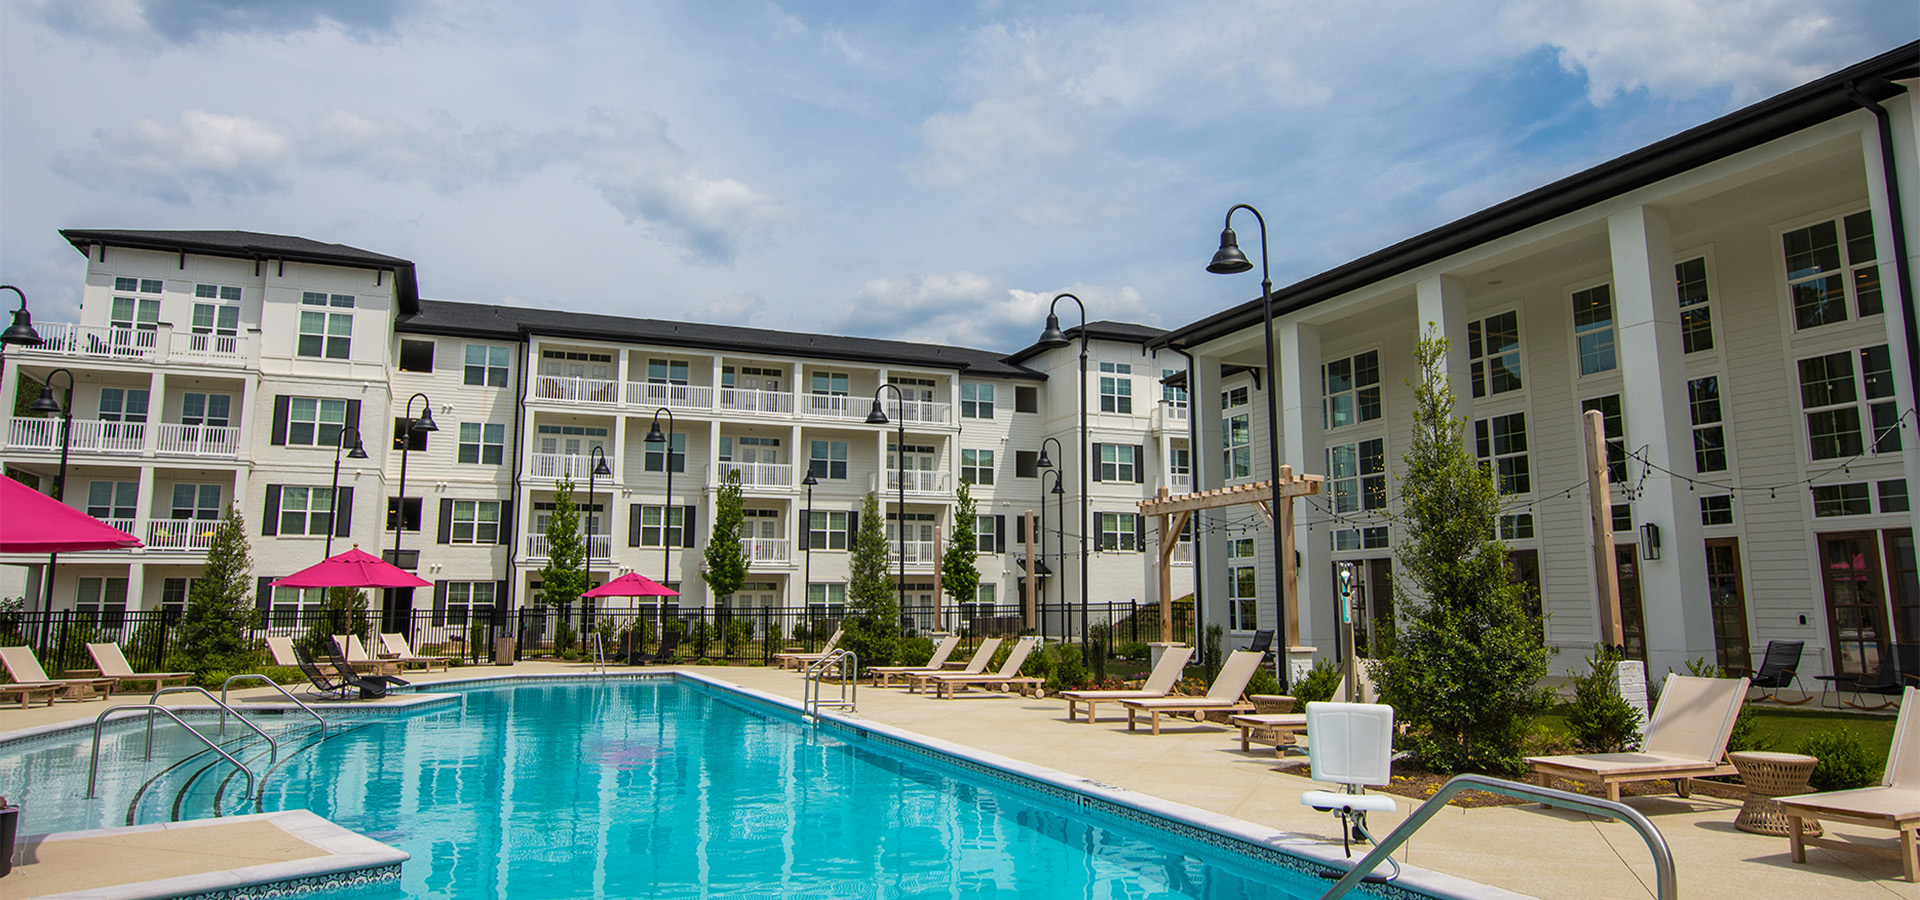 McShane Completes 339 Apartment Units in Acworth, Georgia